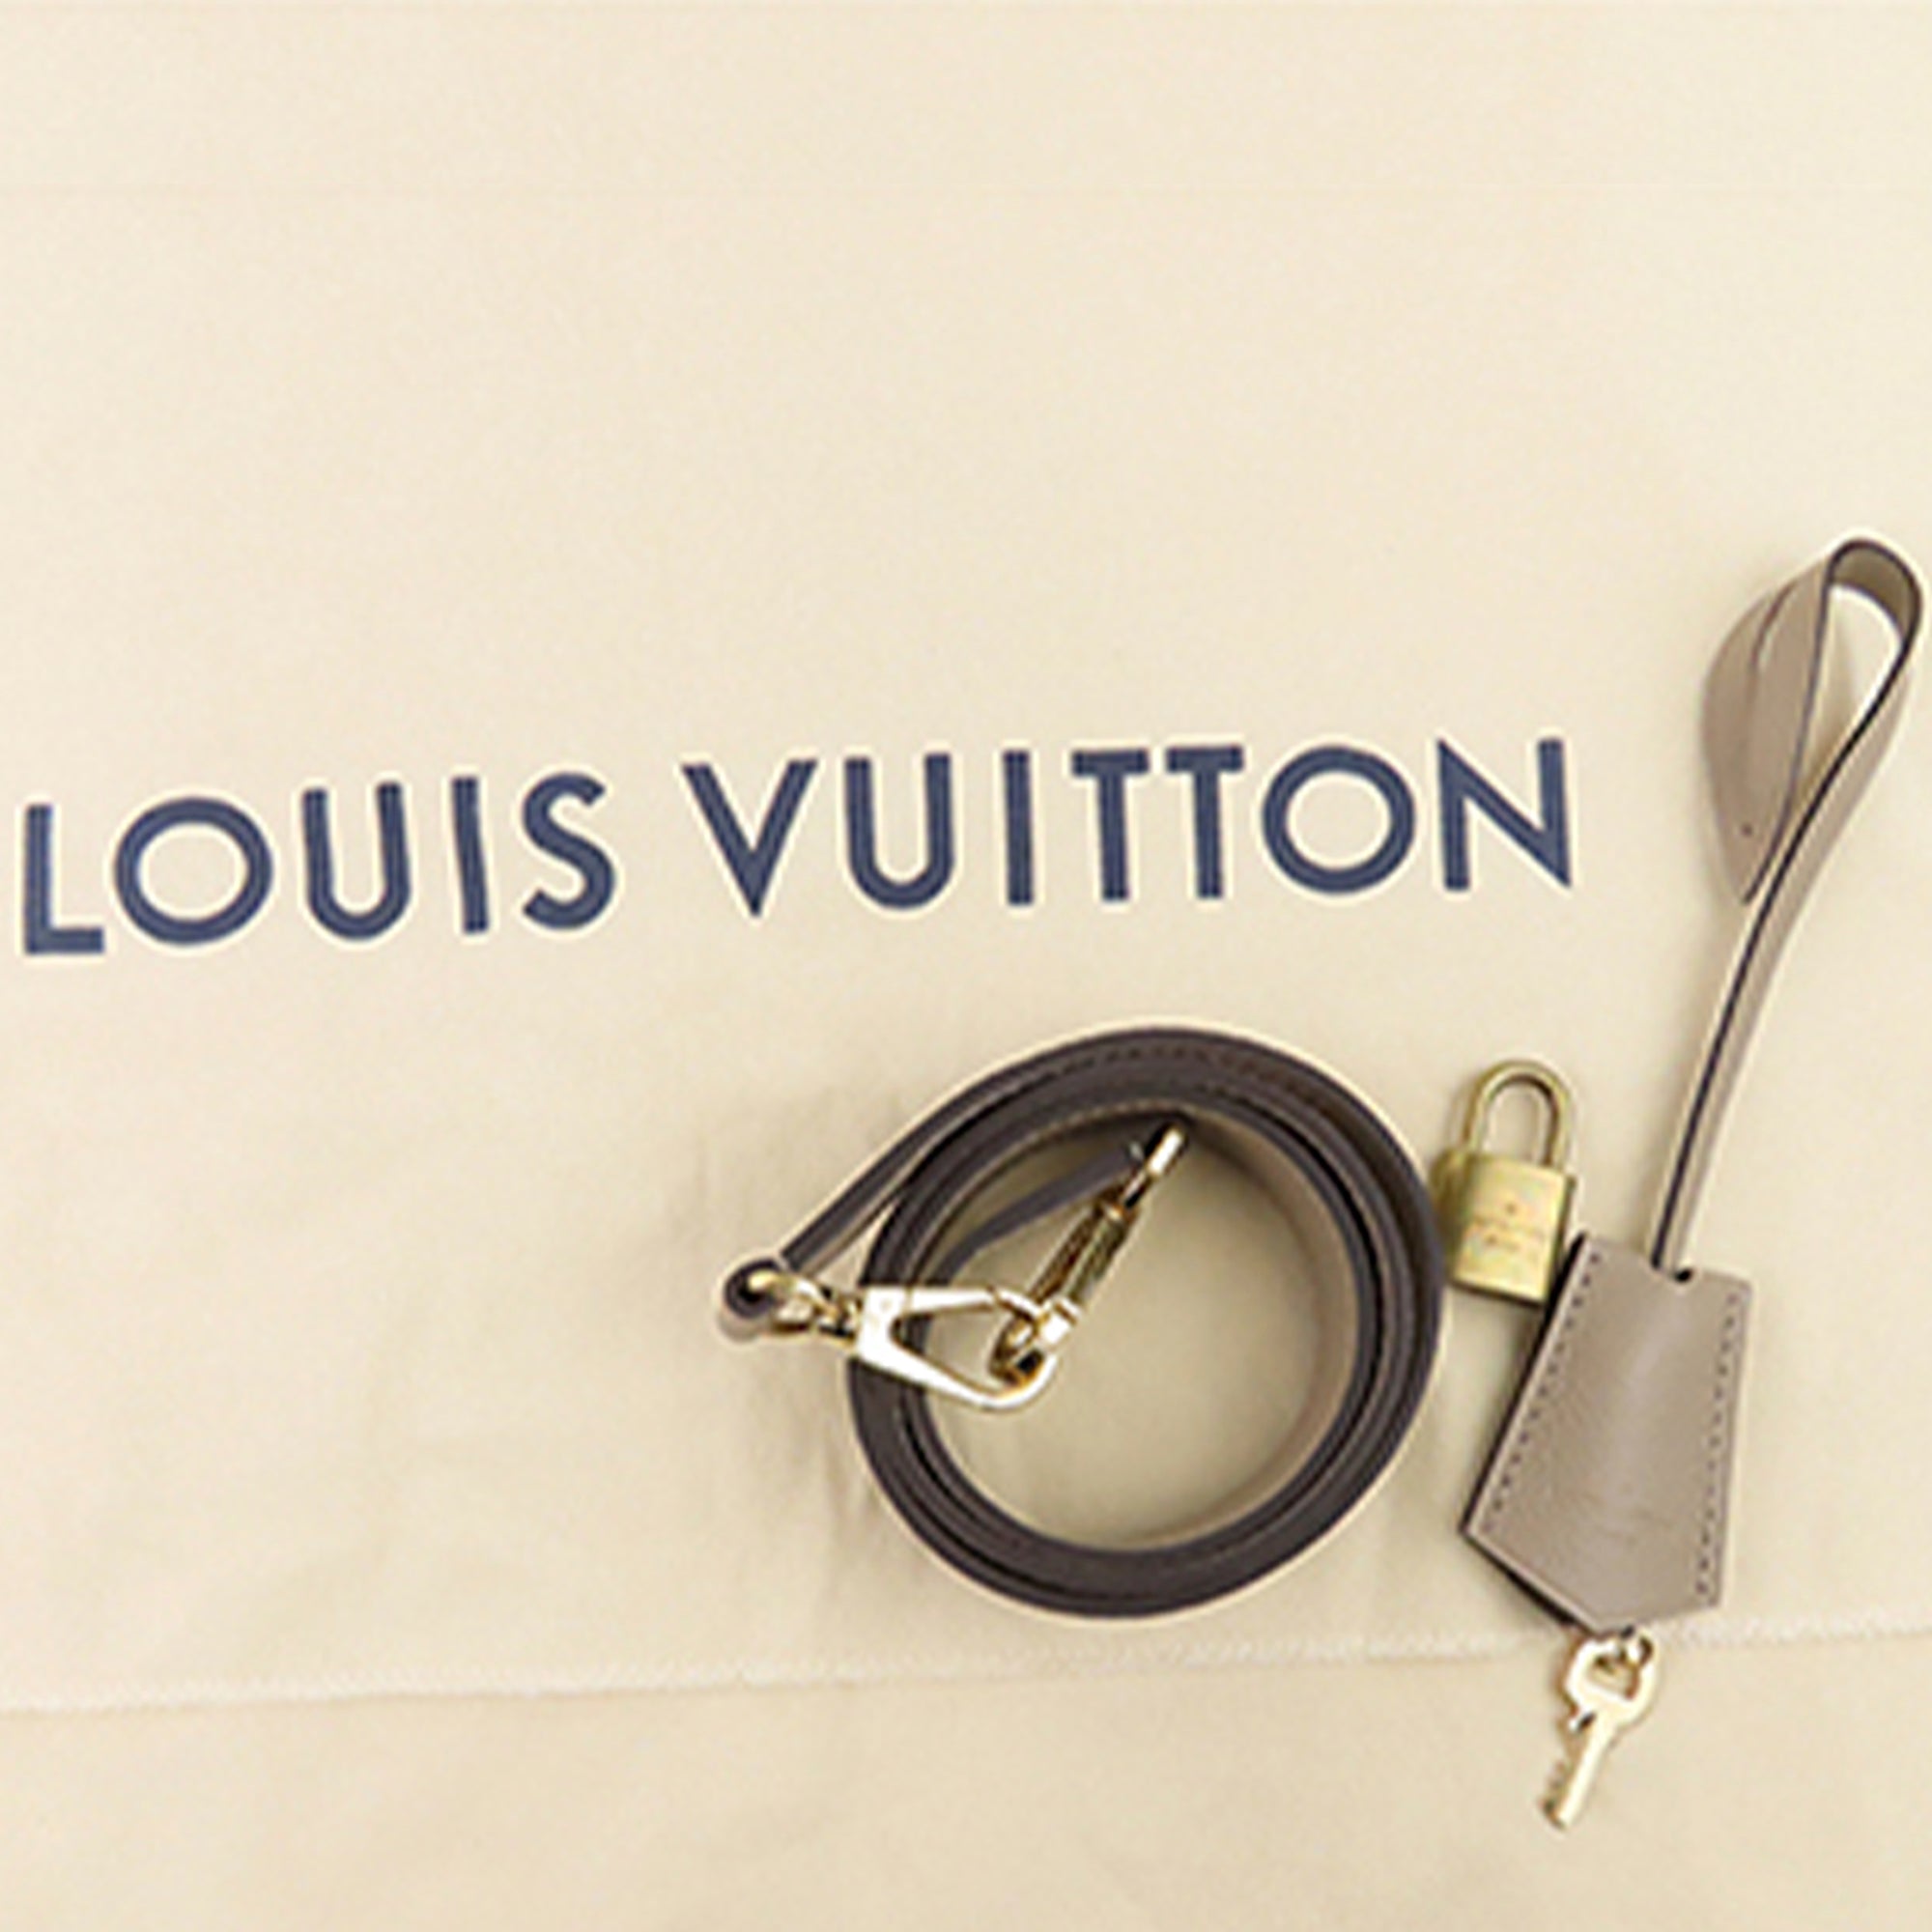 PRELOVED Louis Vuitton Alma PM Monogram 2012 Size 31.5 x 15.5 x 23.5 cm  Only…